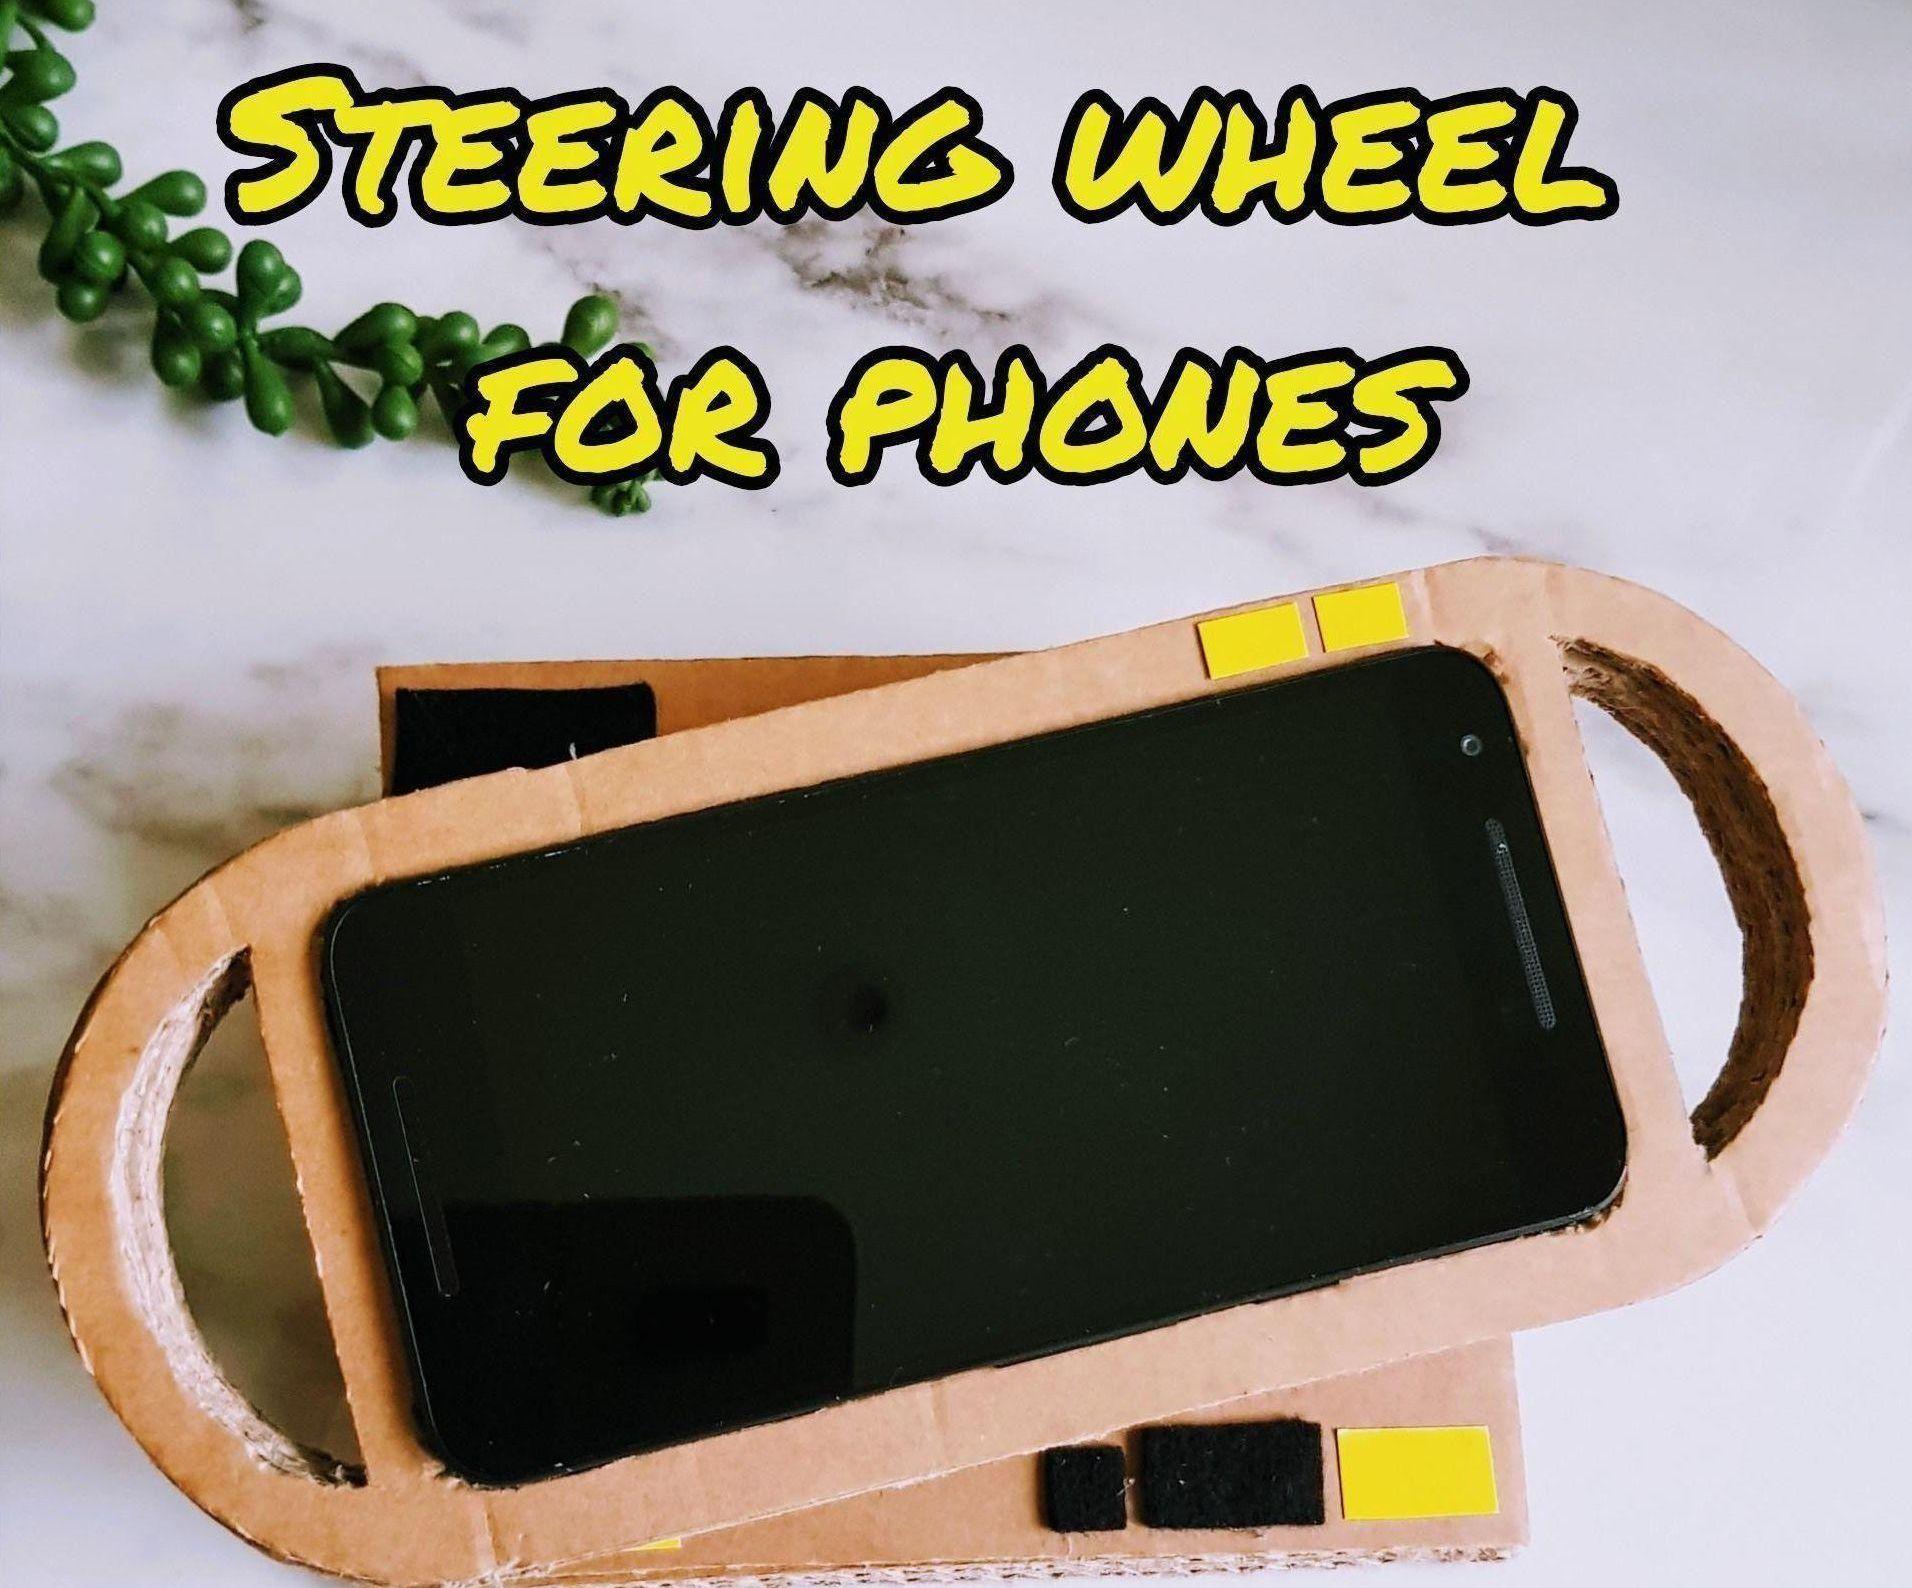 Cardboard Steering Wheel for Phone